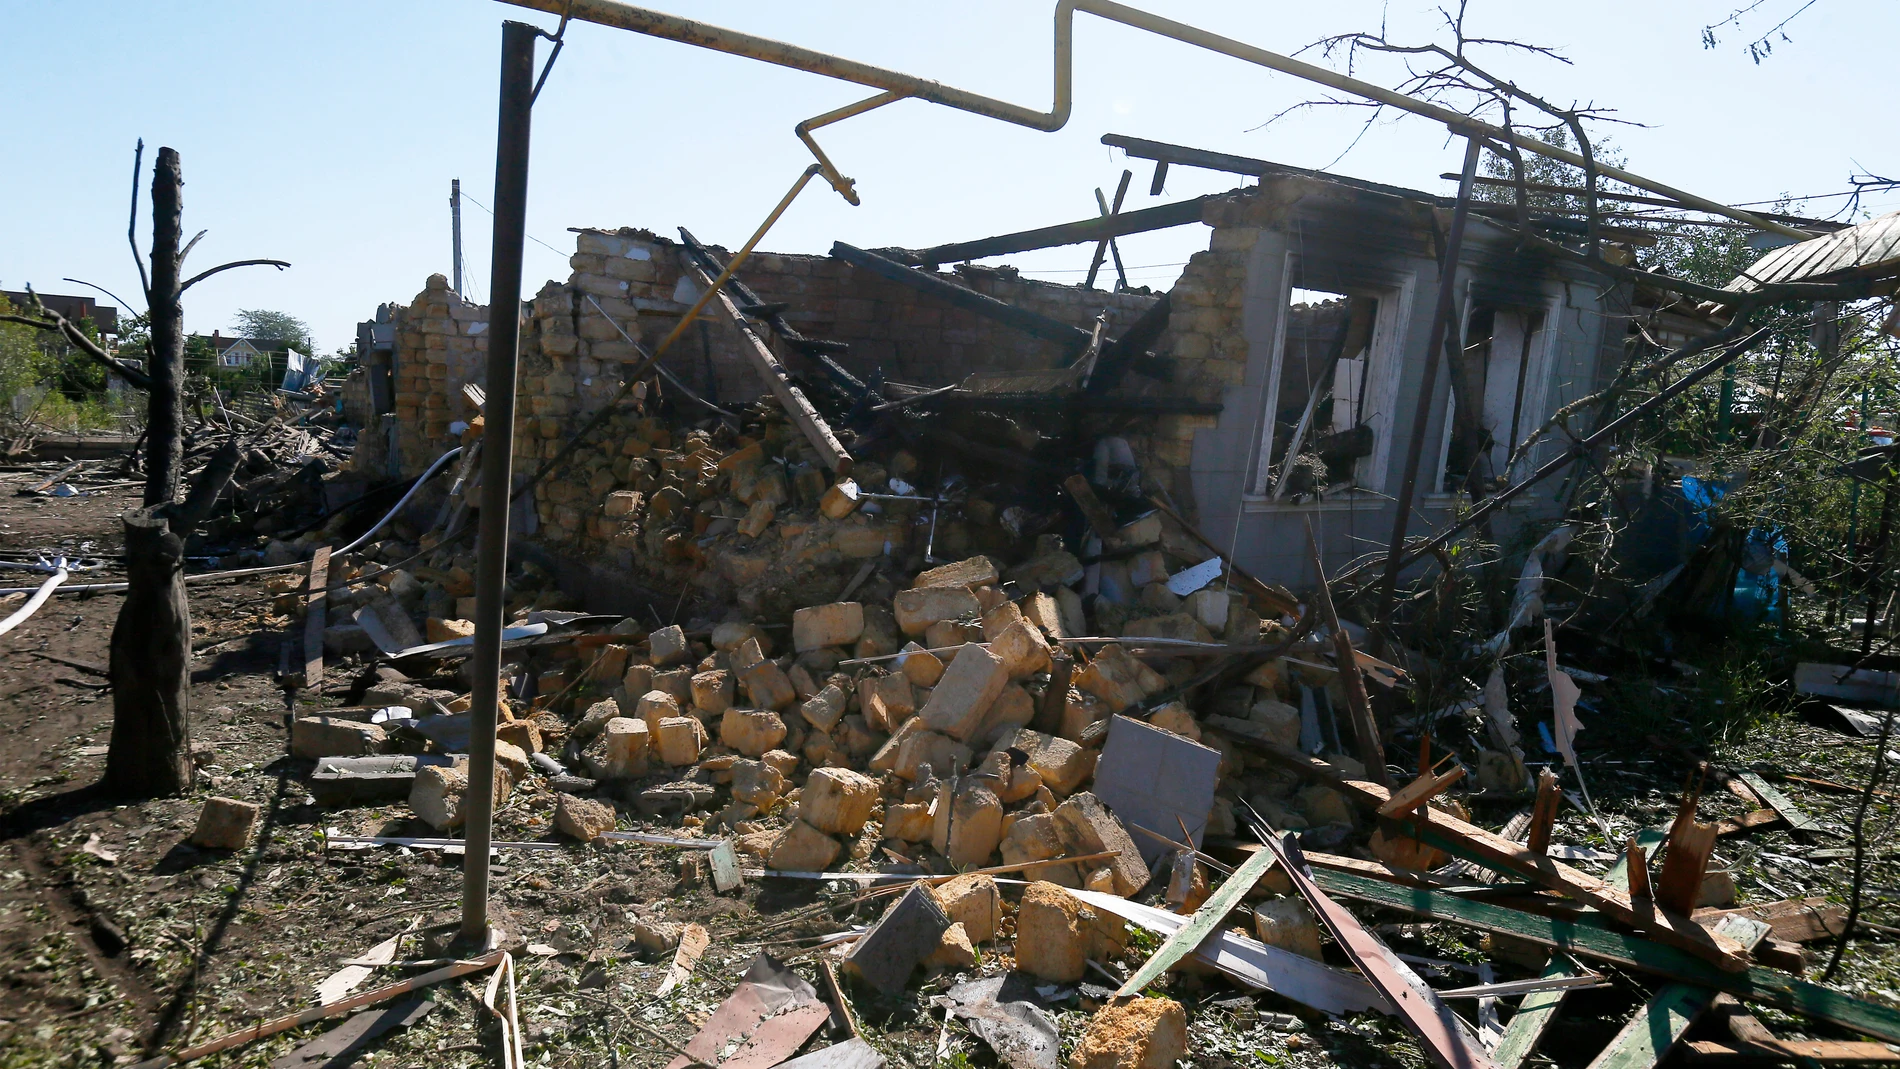 Odesa, Ucrania: Se ve un edificio dañado tras un ataque ruso con cohetes en un pueblo de la región de Odesa. El último ataque contra la ciudad portuaria antes del de hoy fue el 19 de julio